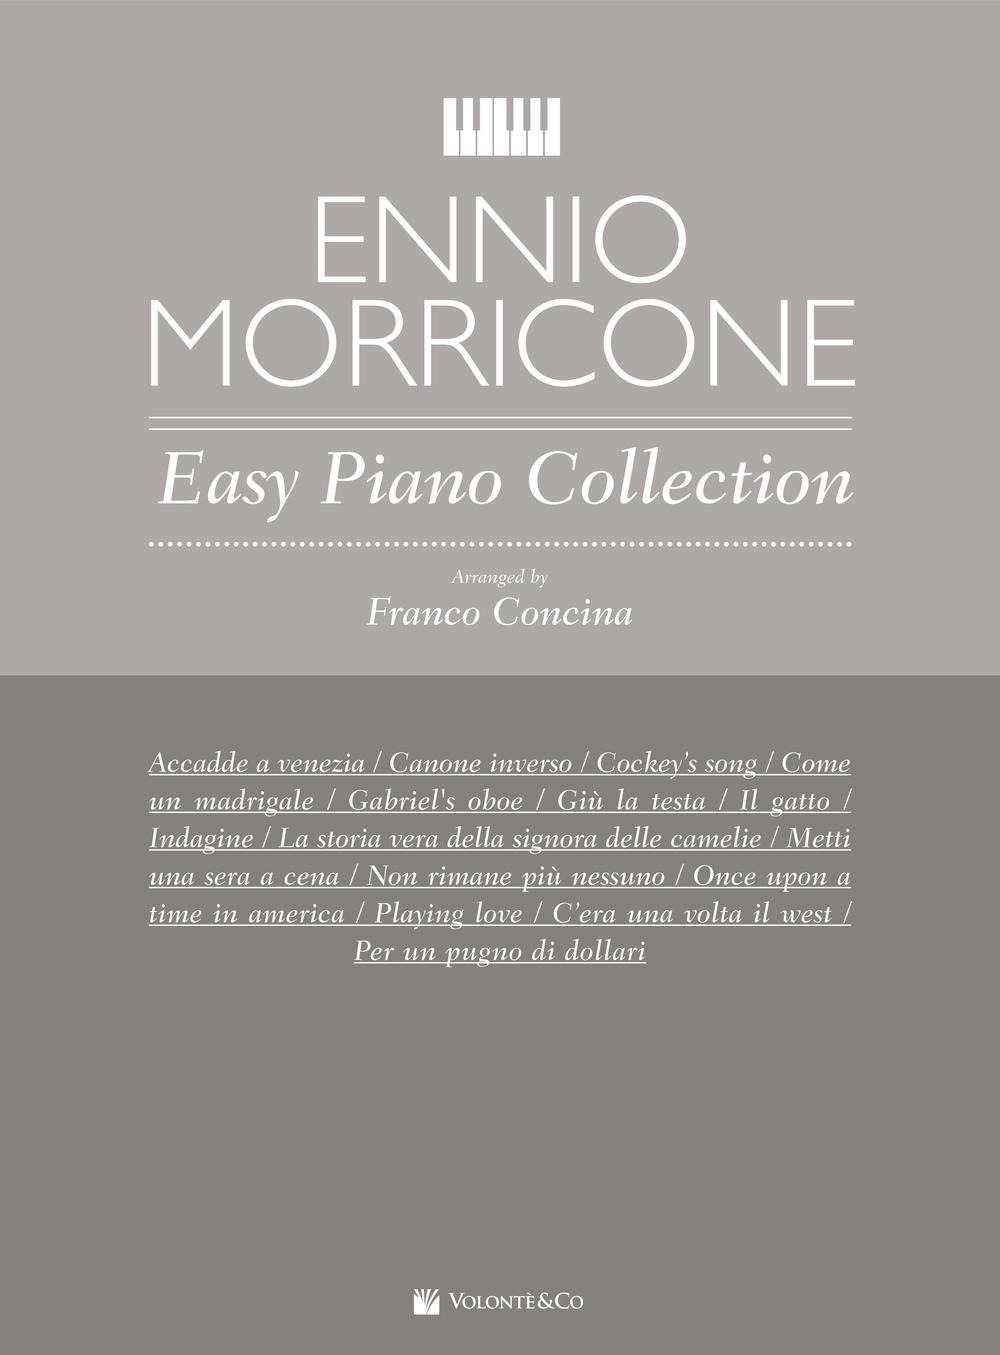 Libri Ennio Morricone - Easy Piano Collection NUOVO SIGILLATO SUBITO DISPONIBILE